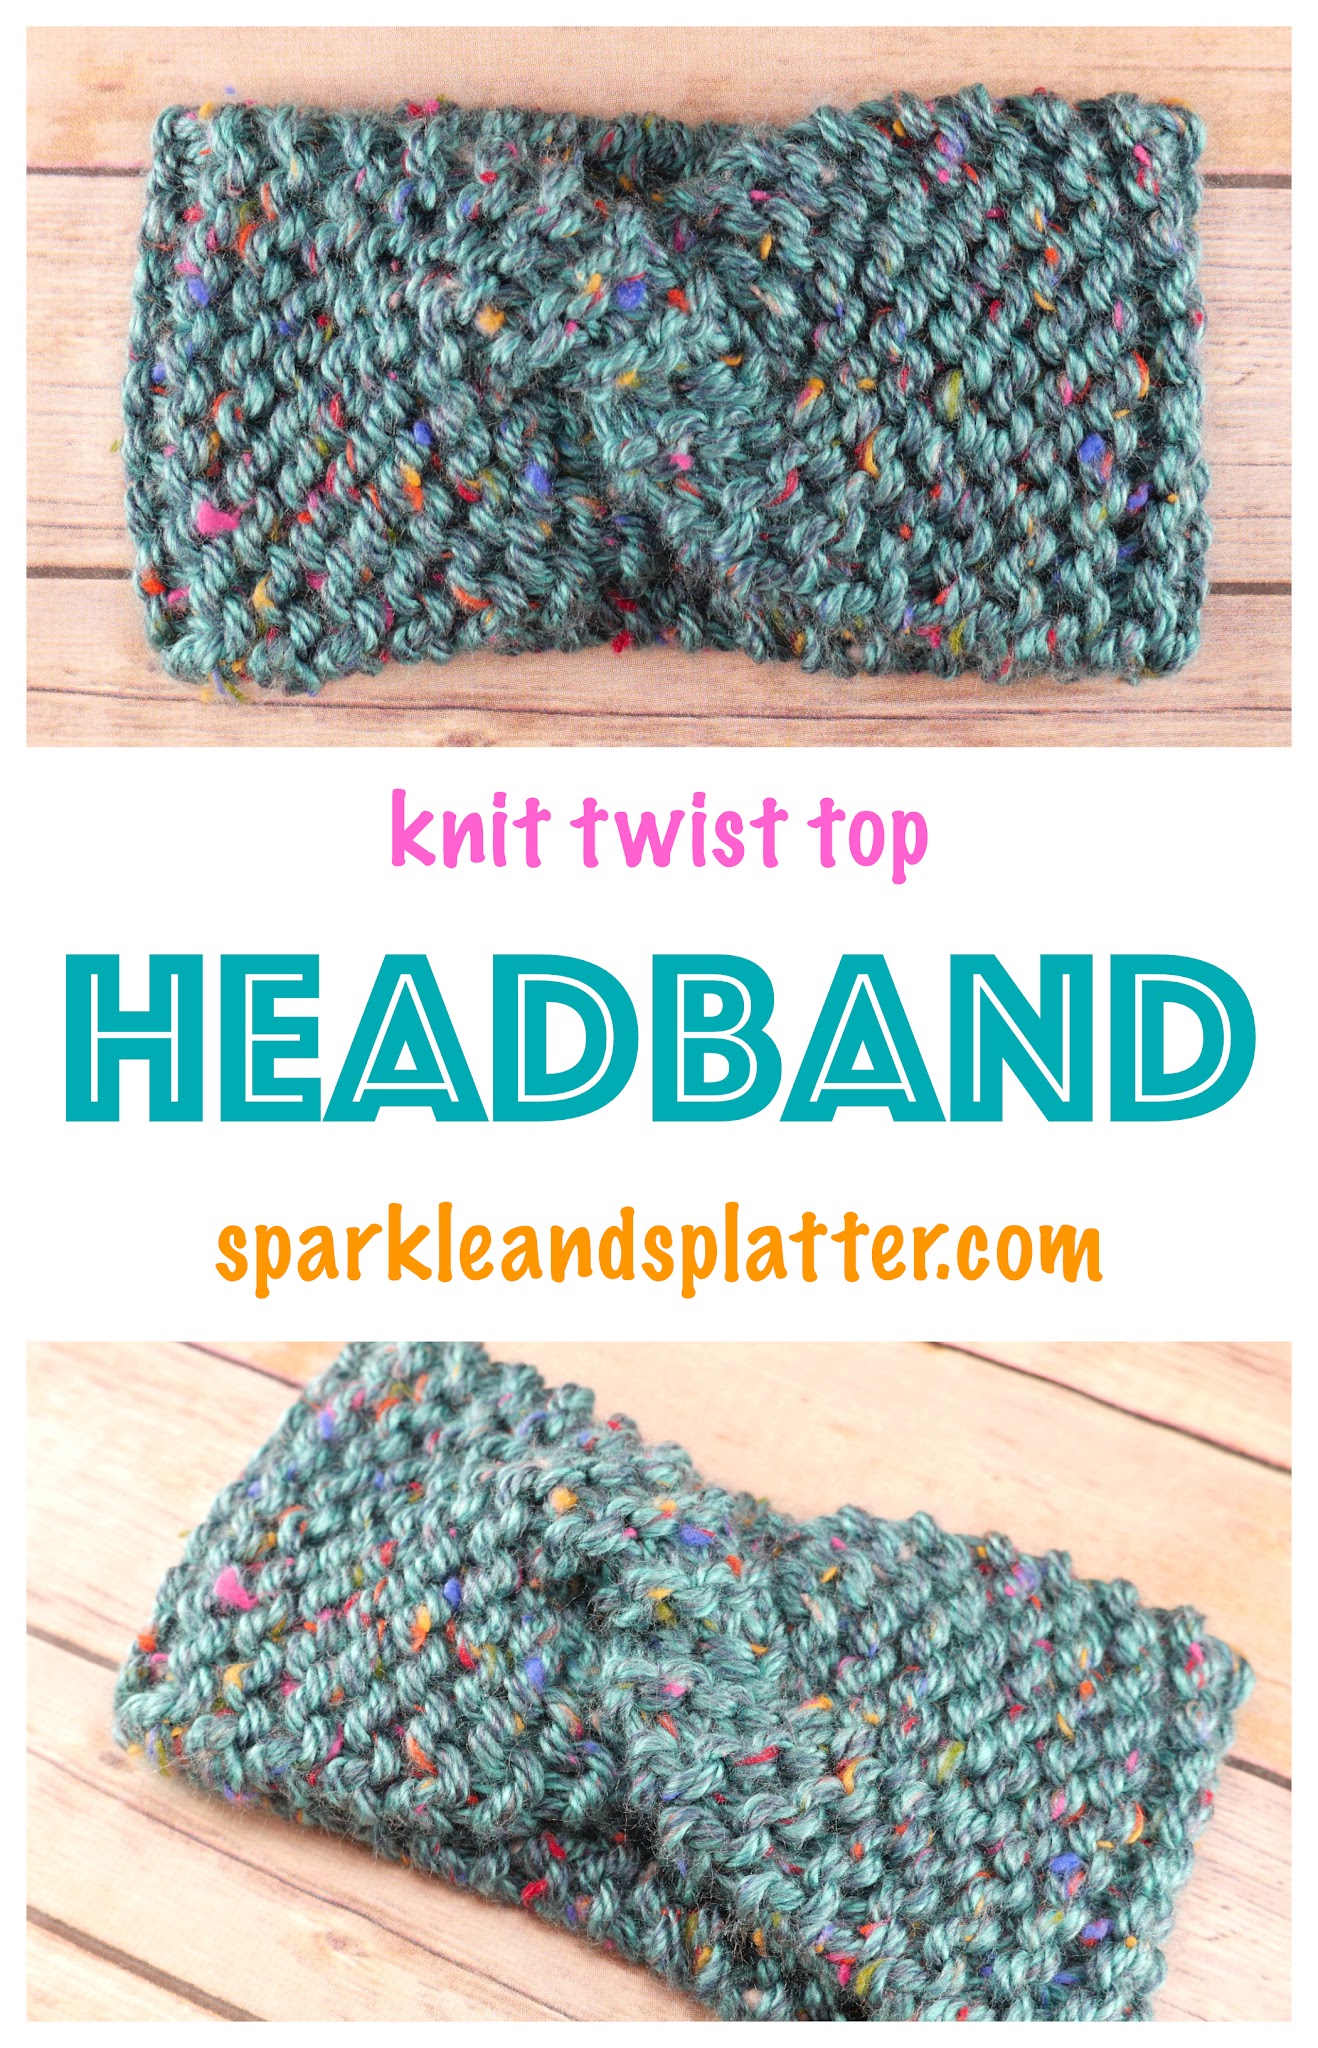 Knit Twist Top Headband